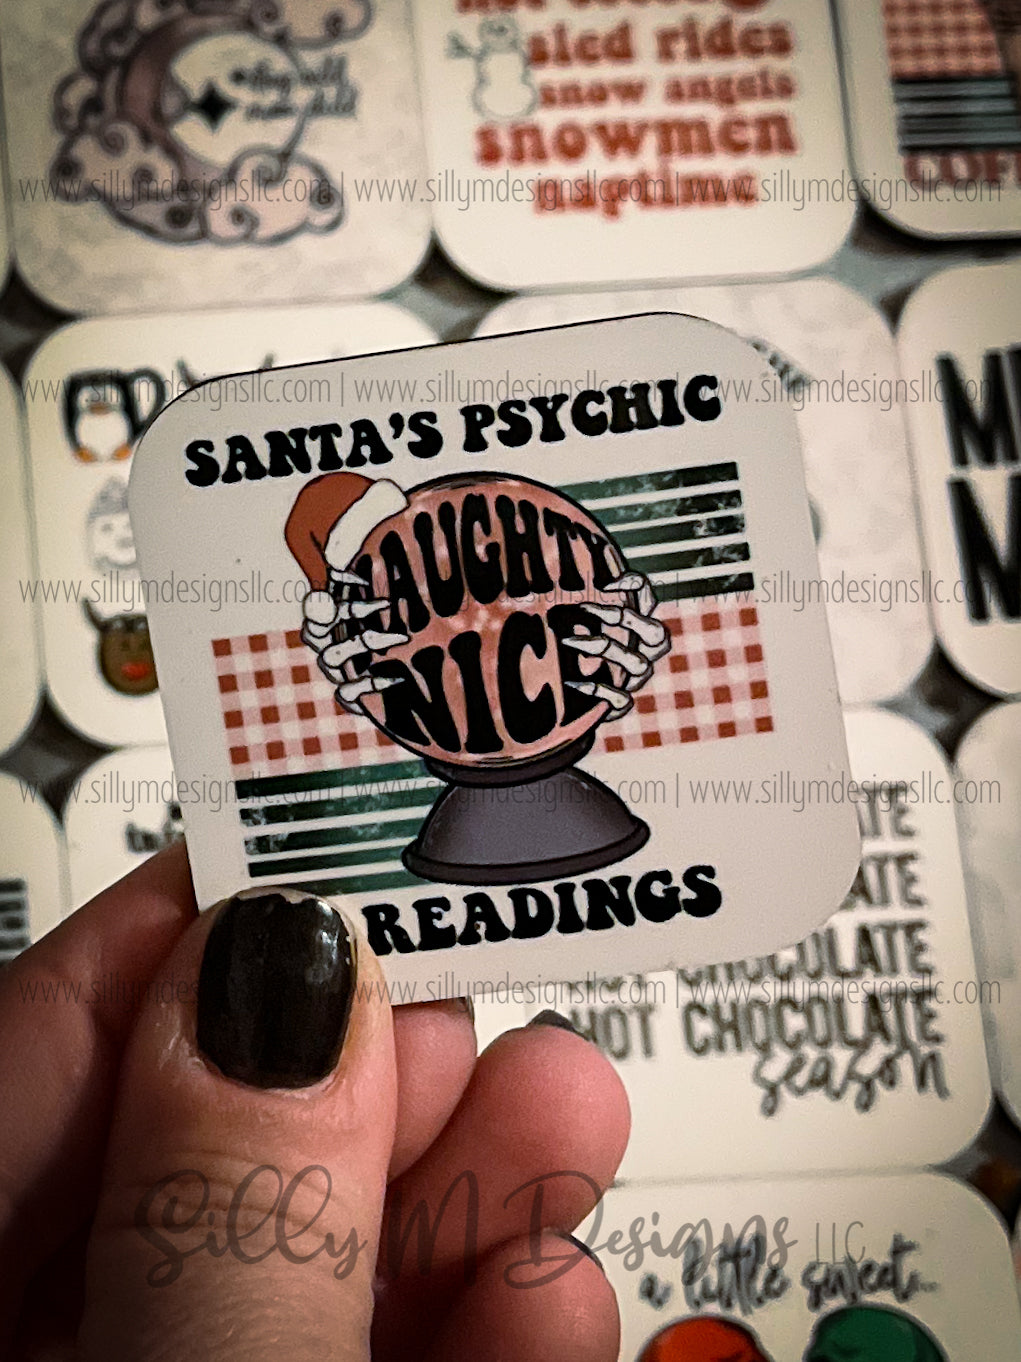 Santa's Psychic Magnet